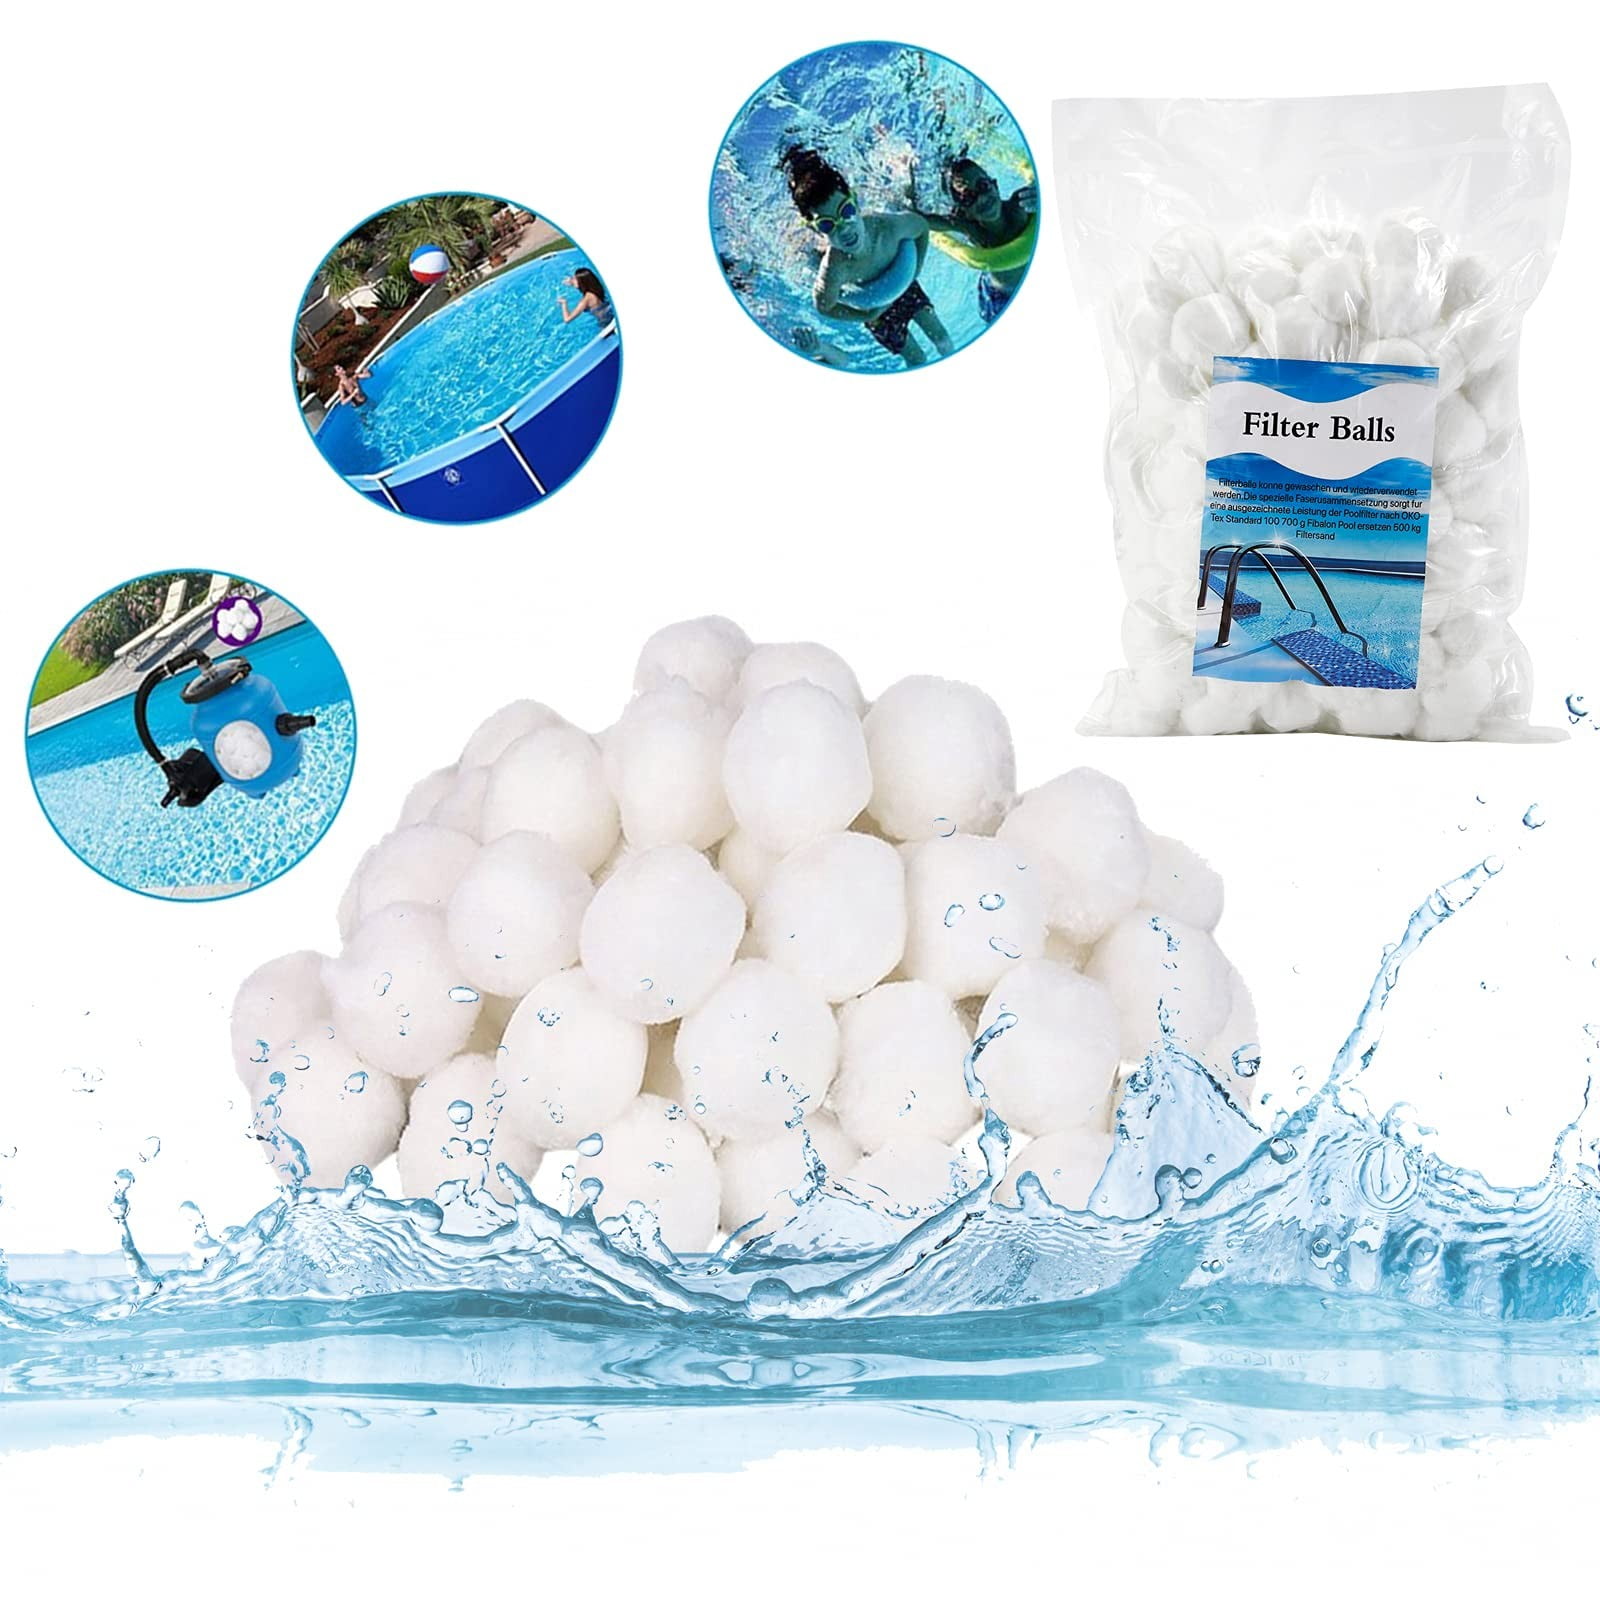 Filter Balls 700g Für Sandfilter Alternativ 25 Kg Filtersand Quarzsand Für Pool 